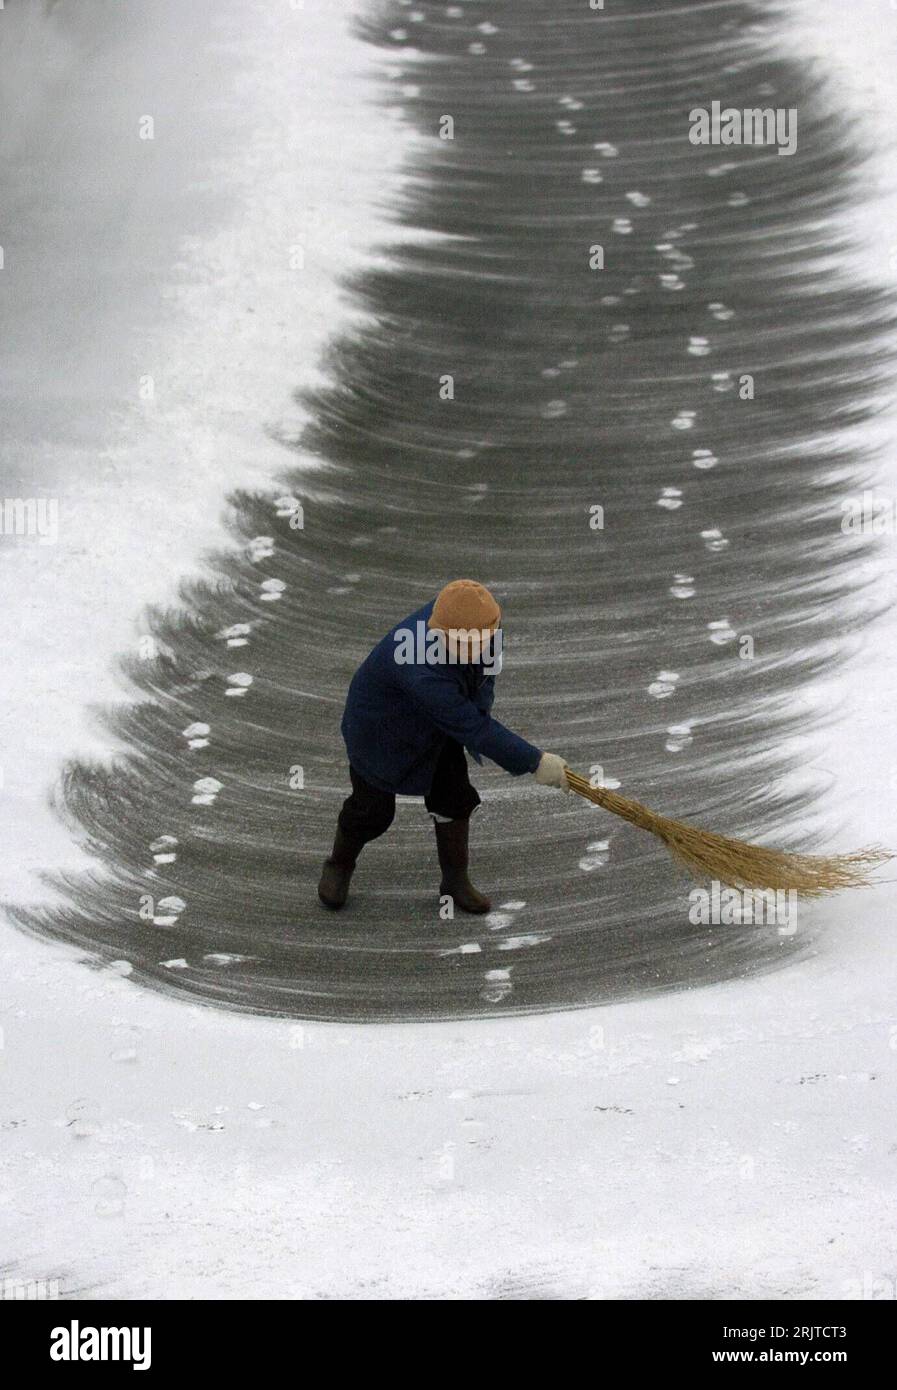 Schnee mit einem besen fegen -Fotos und -Bildmaterial in hoher